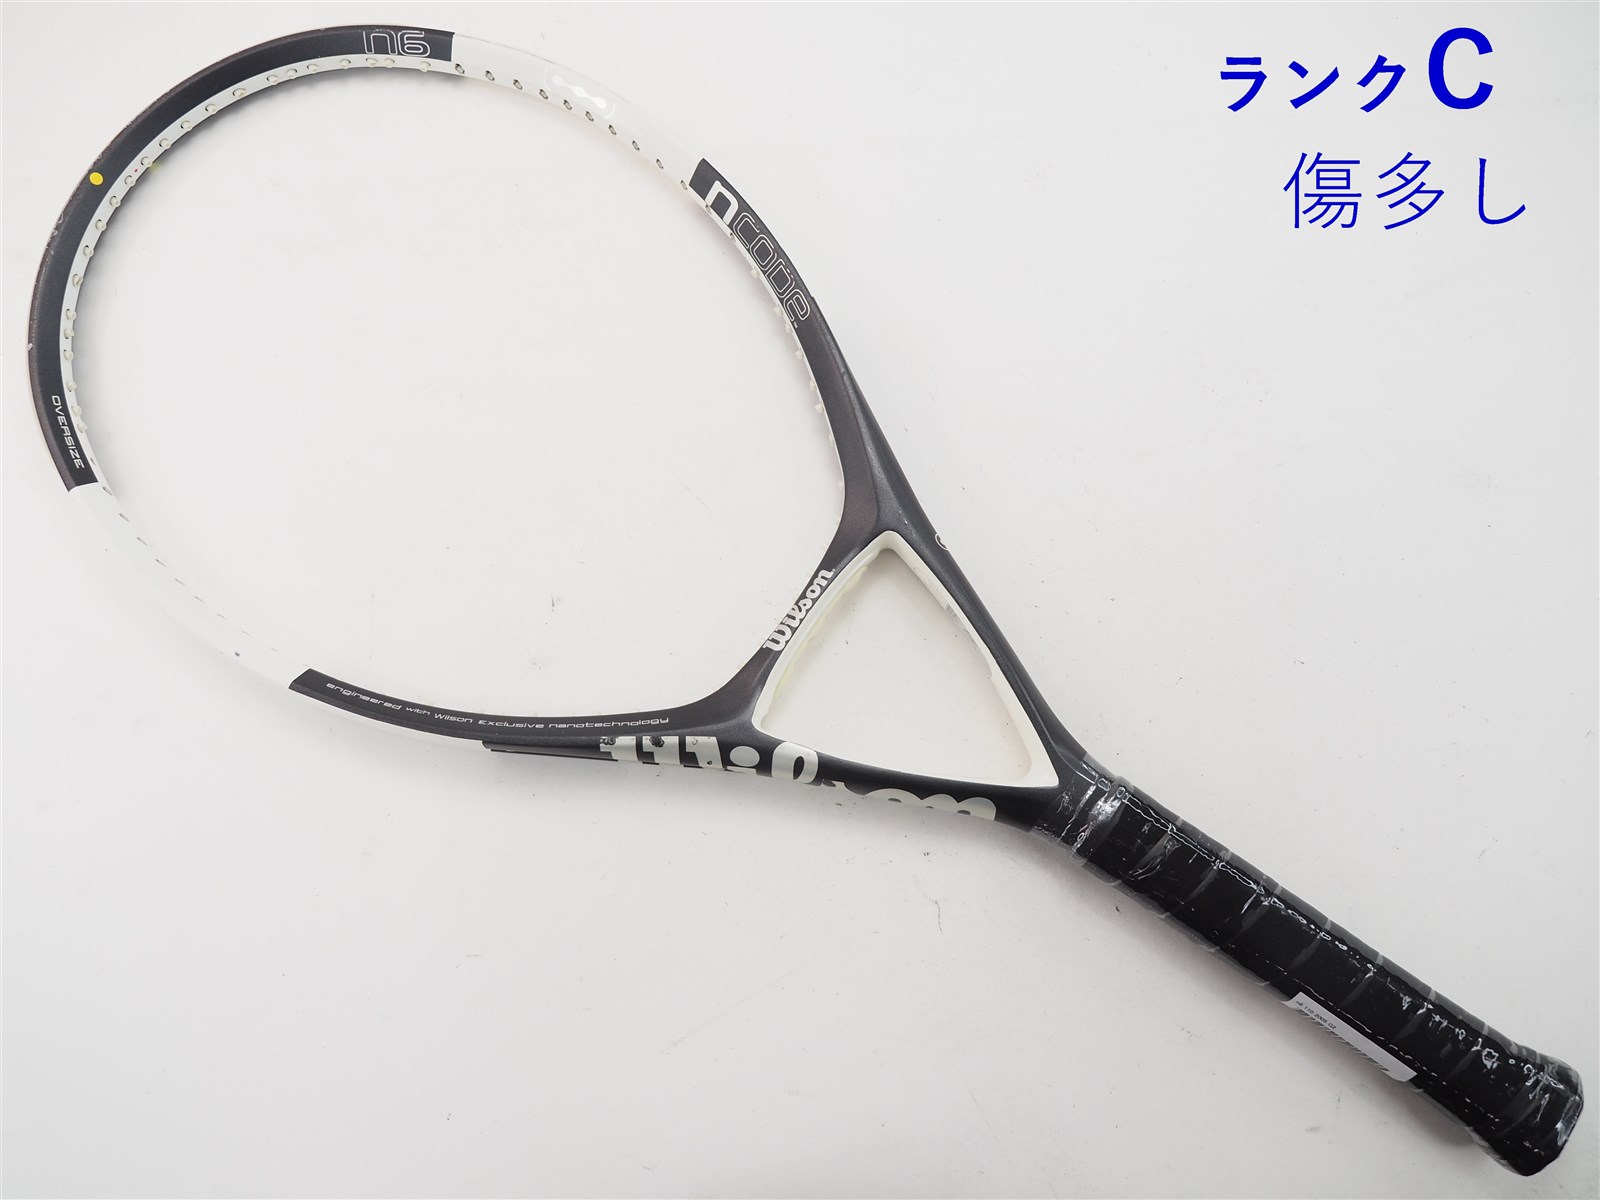 テニスラケット ウィルソン エヌ6 110 2005年モデル (G1)WILSON n6 110